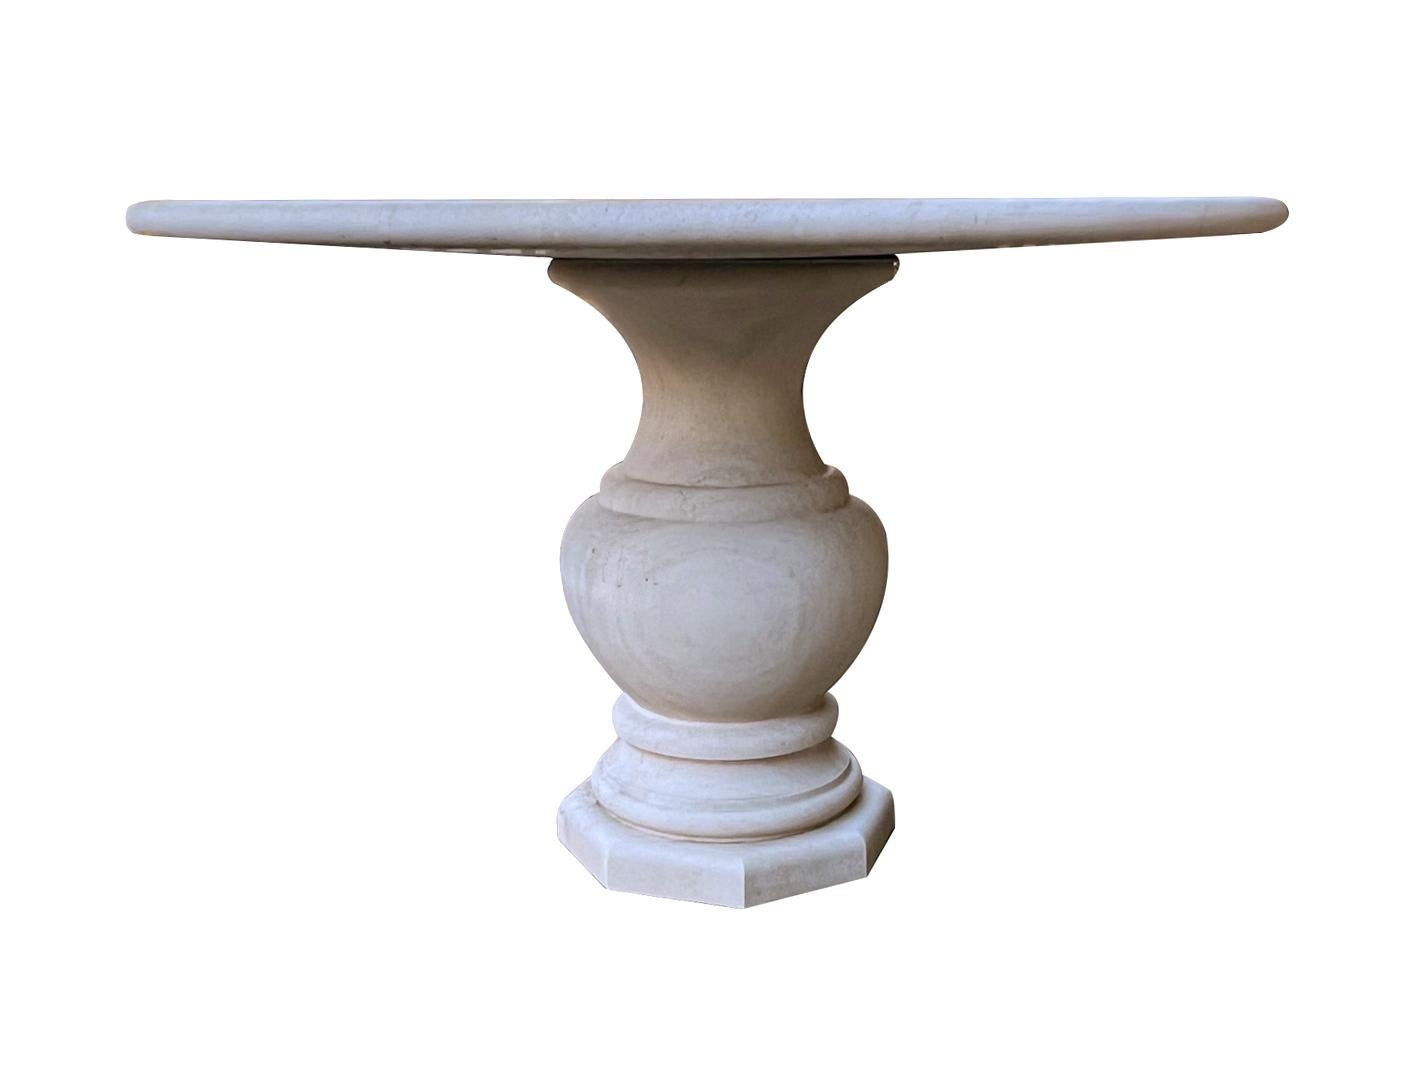 dieser in Frankreich handgefertigte Tisch im klassischen Stil hat eine dicke runde Platte mit abgerundeter Kante; er steht auf einem robusten und formschönen balusterförmigen Sockel; die Oberfläche weist insgesamt gleichmäßige Gebrauchsspuren und